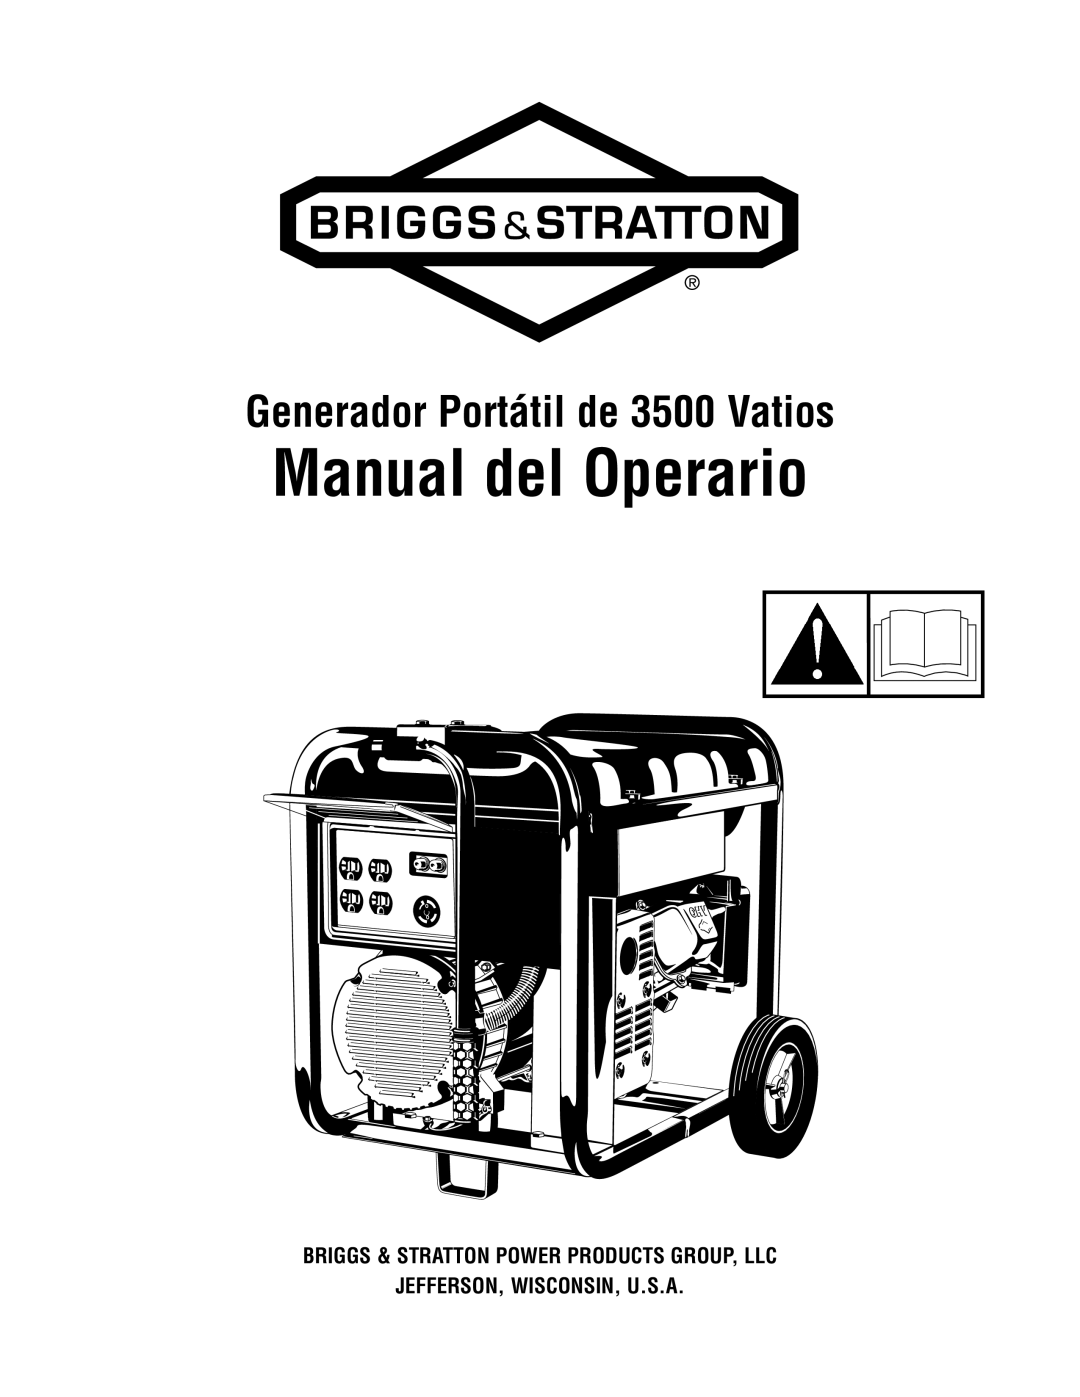 Briggs & Stratton 030248-0 manual Manual del Operario, Generador Portátil de 3500 Vatios, Jefferson, Wisconsin, U.S.A 